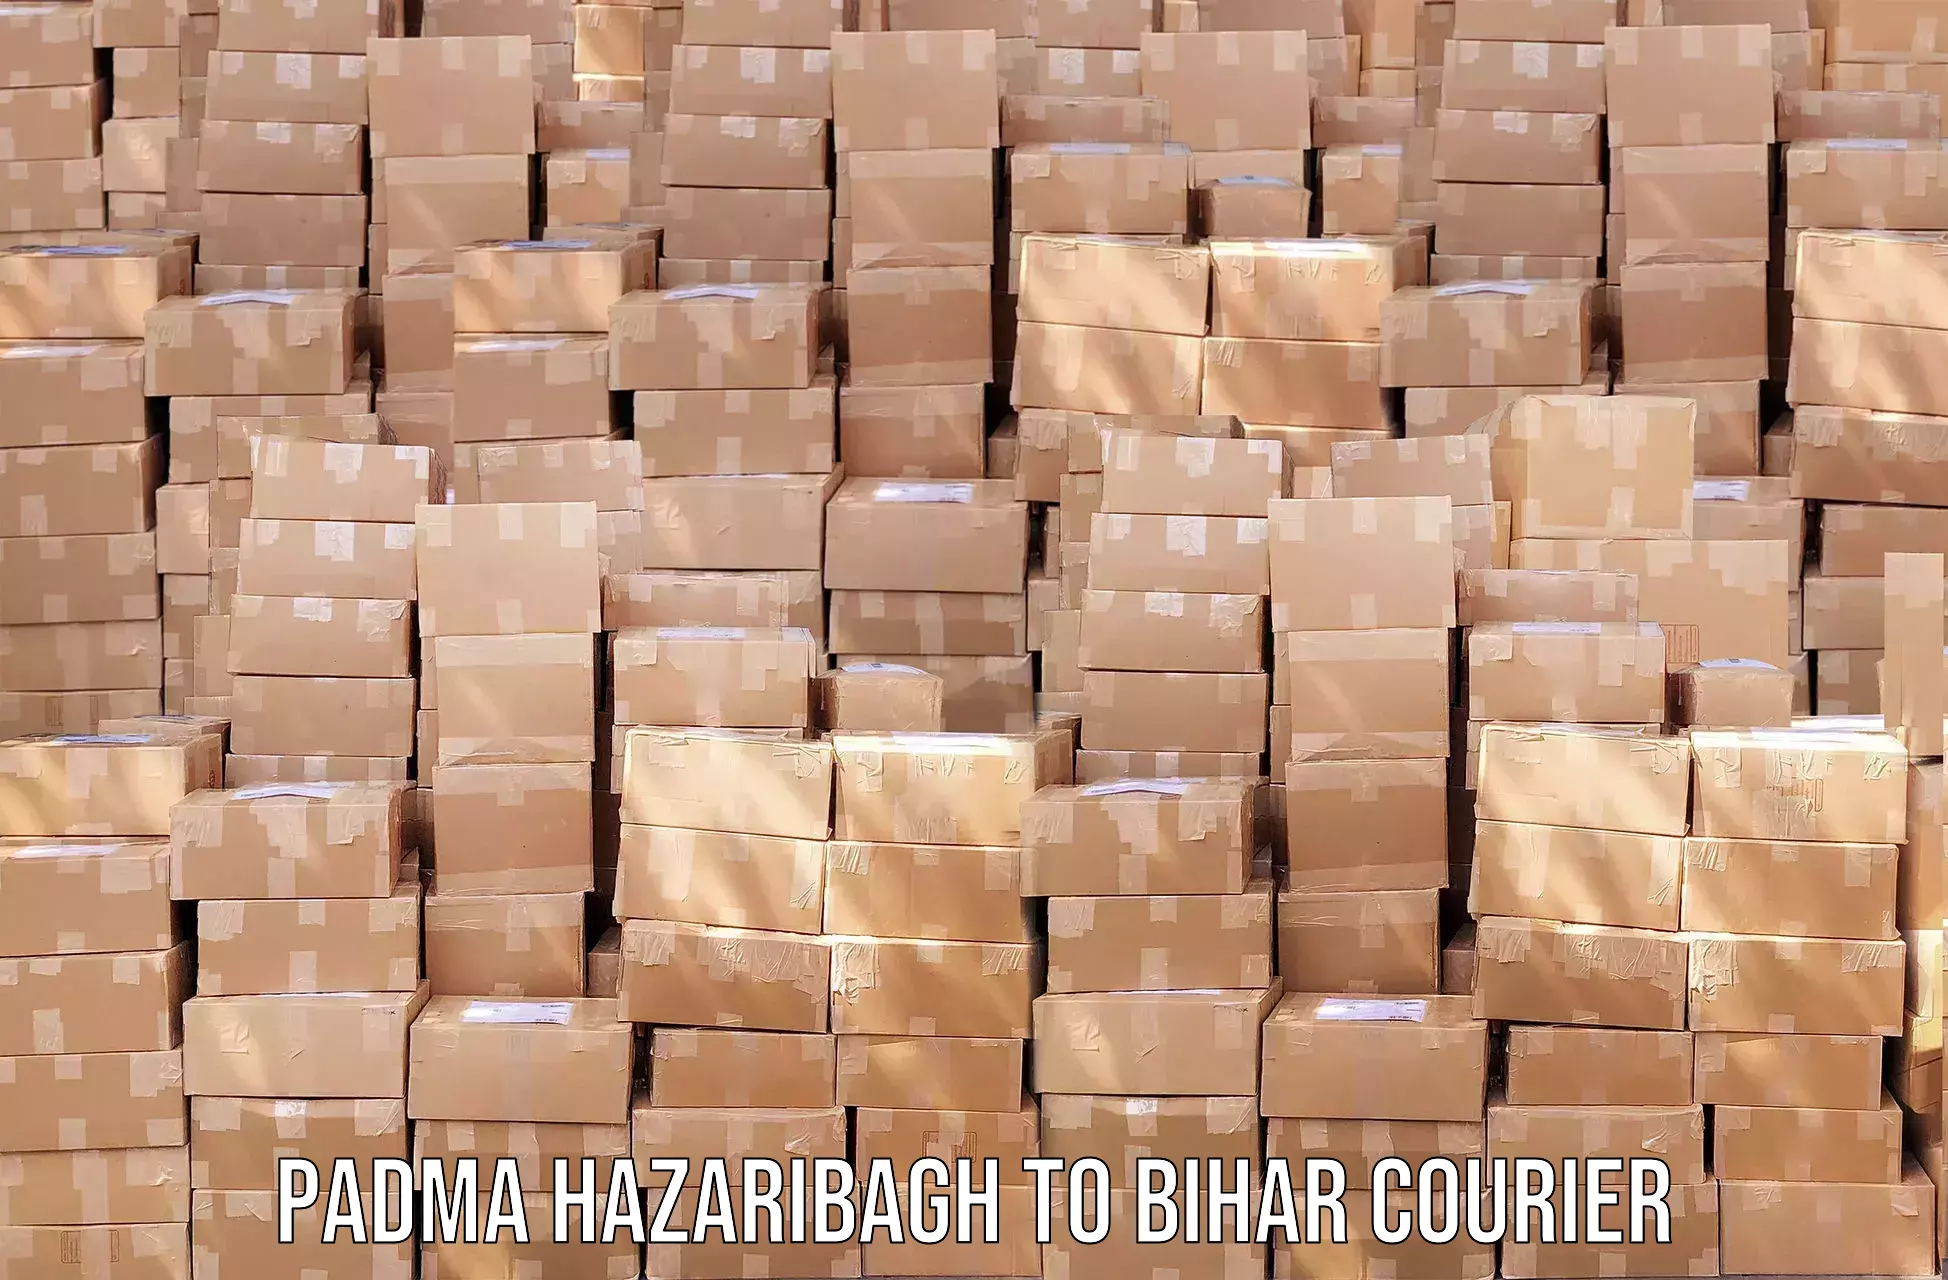 Urgent courier needs Padma Hazaribagh to Chhapra